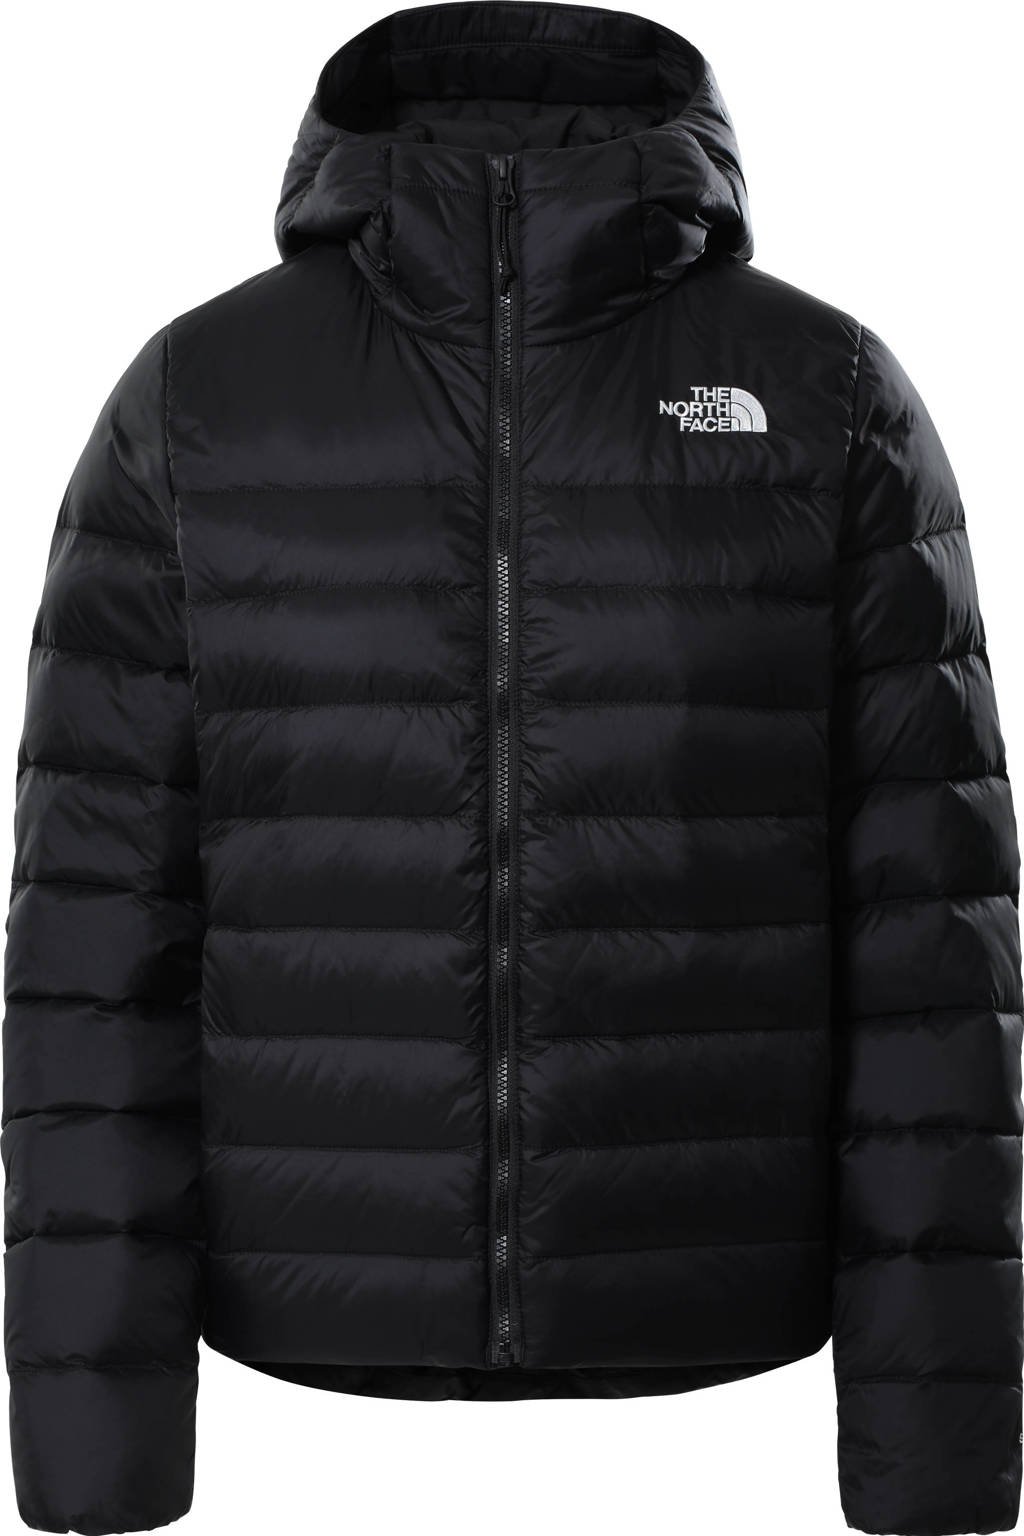 Rechtdoor lijden gebonden The North Face gewatteerde jas Aconcagua zwart | wehkamp